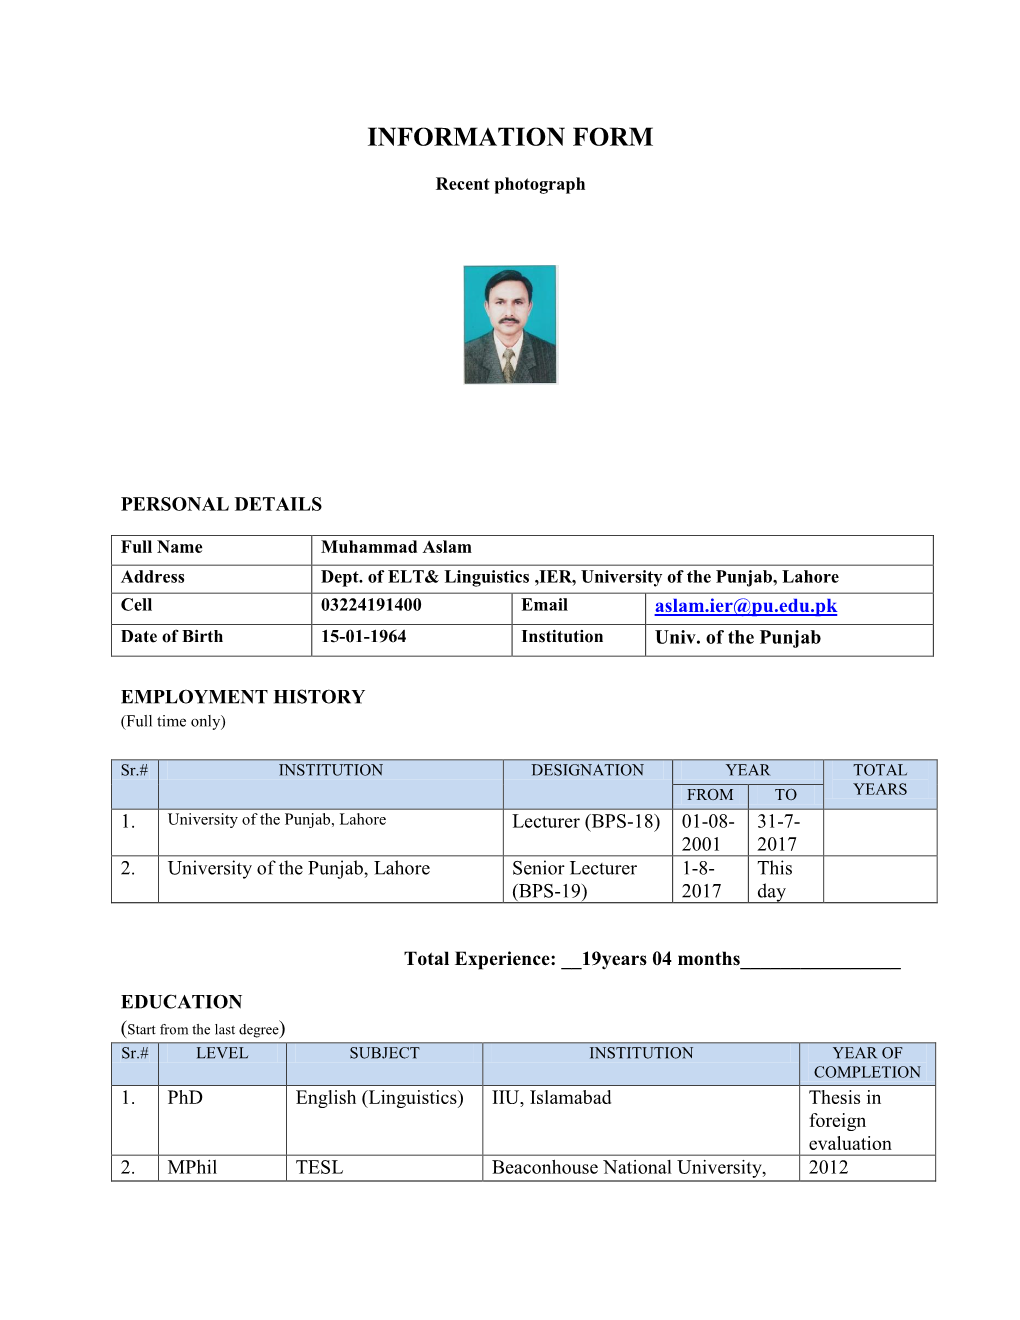 CV of Mr. Muhammad Aslam